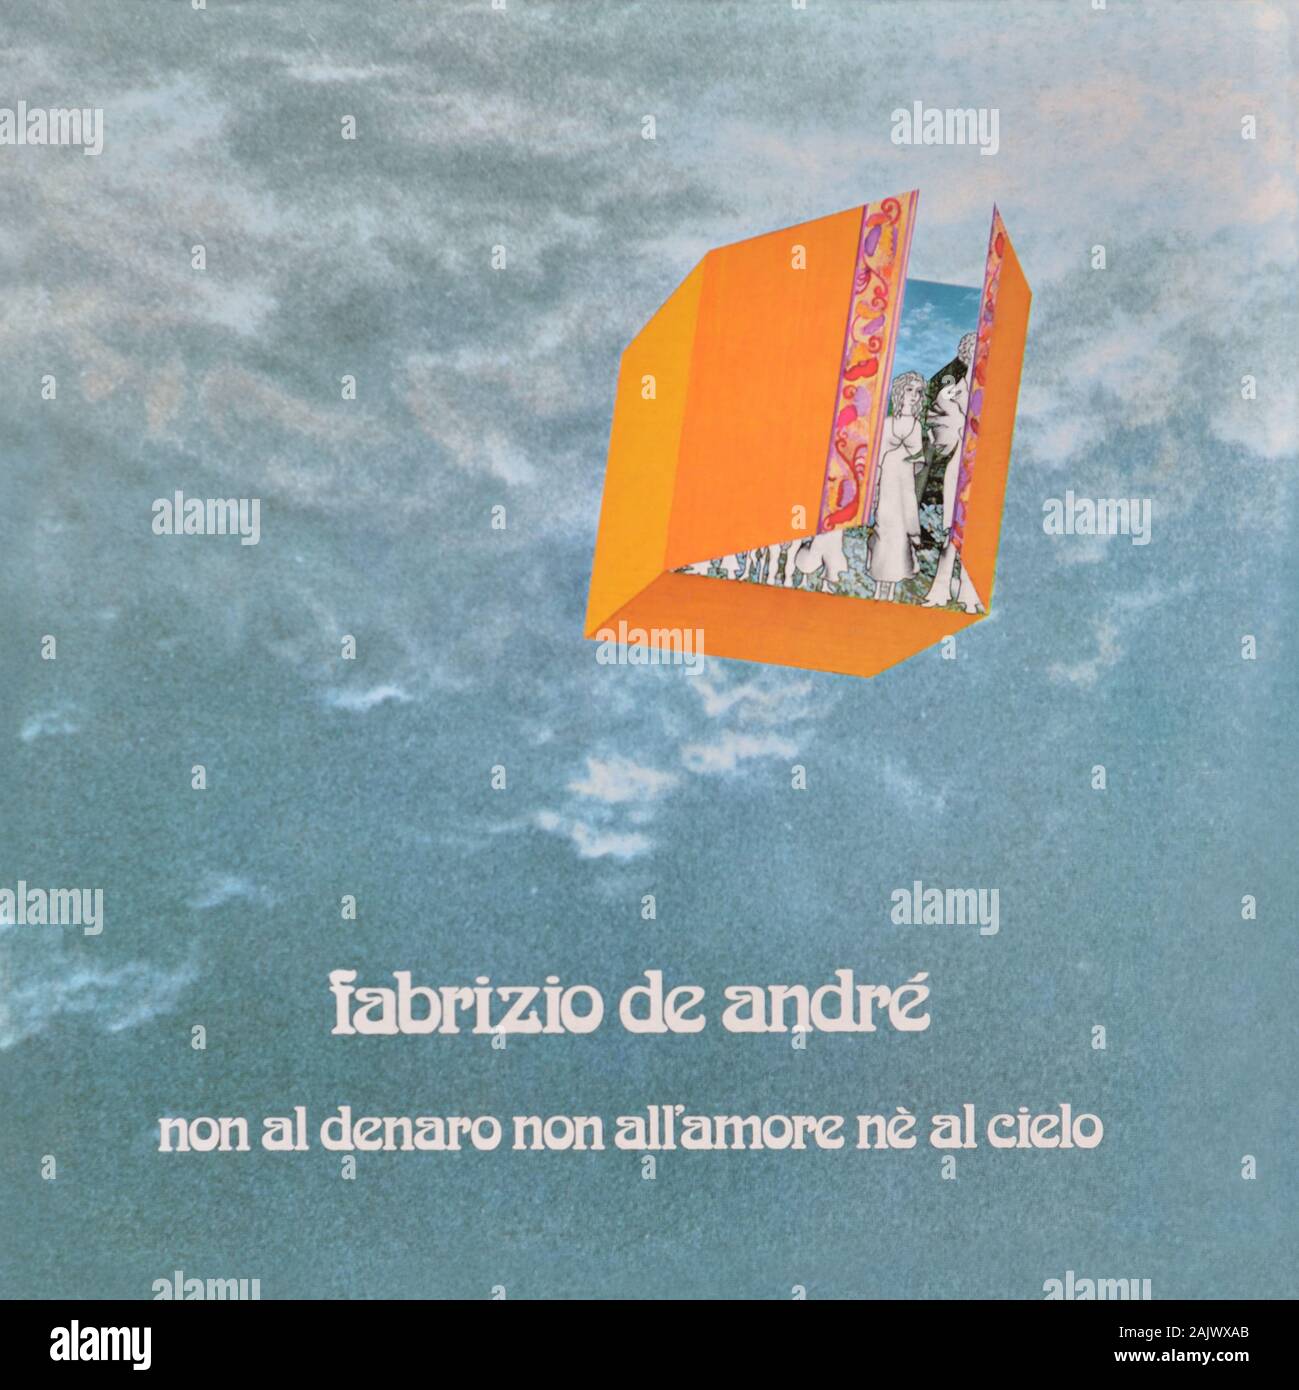 Fabrizio De Andrè - original vinyl album cover - Non Al Denaro Non All'Amore Nè Al Cielo - 1971 Stock Photo